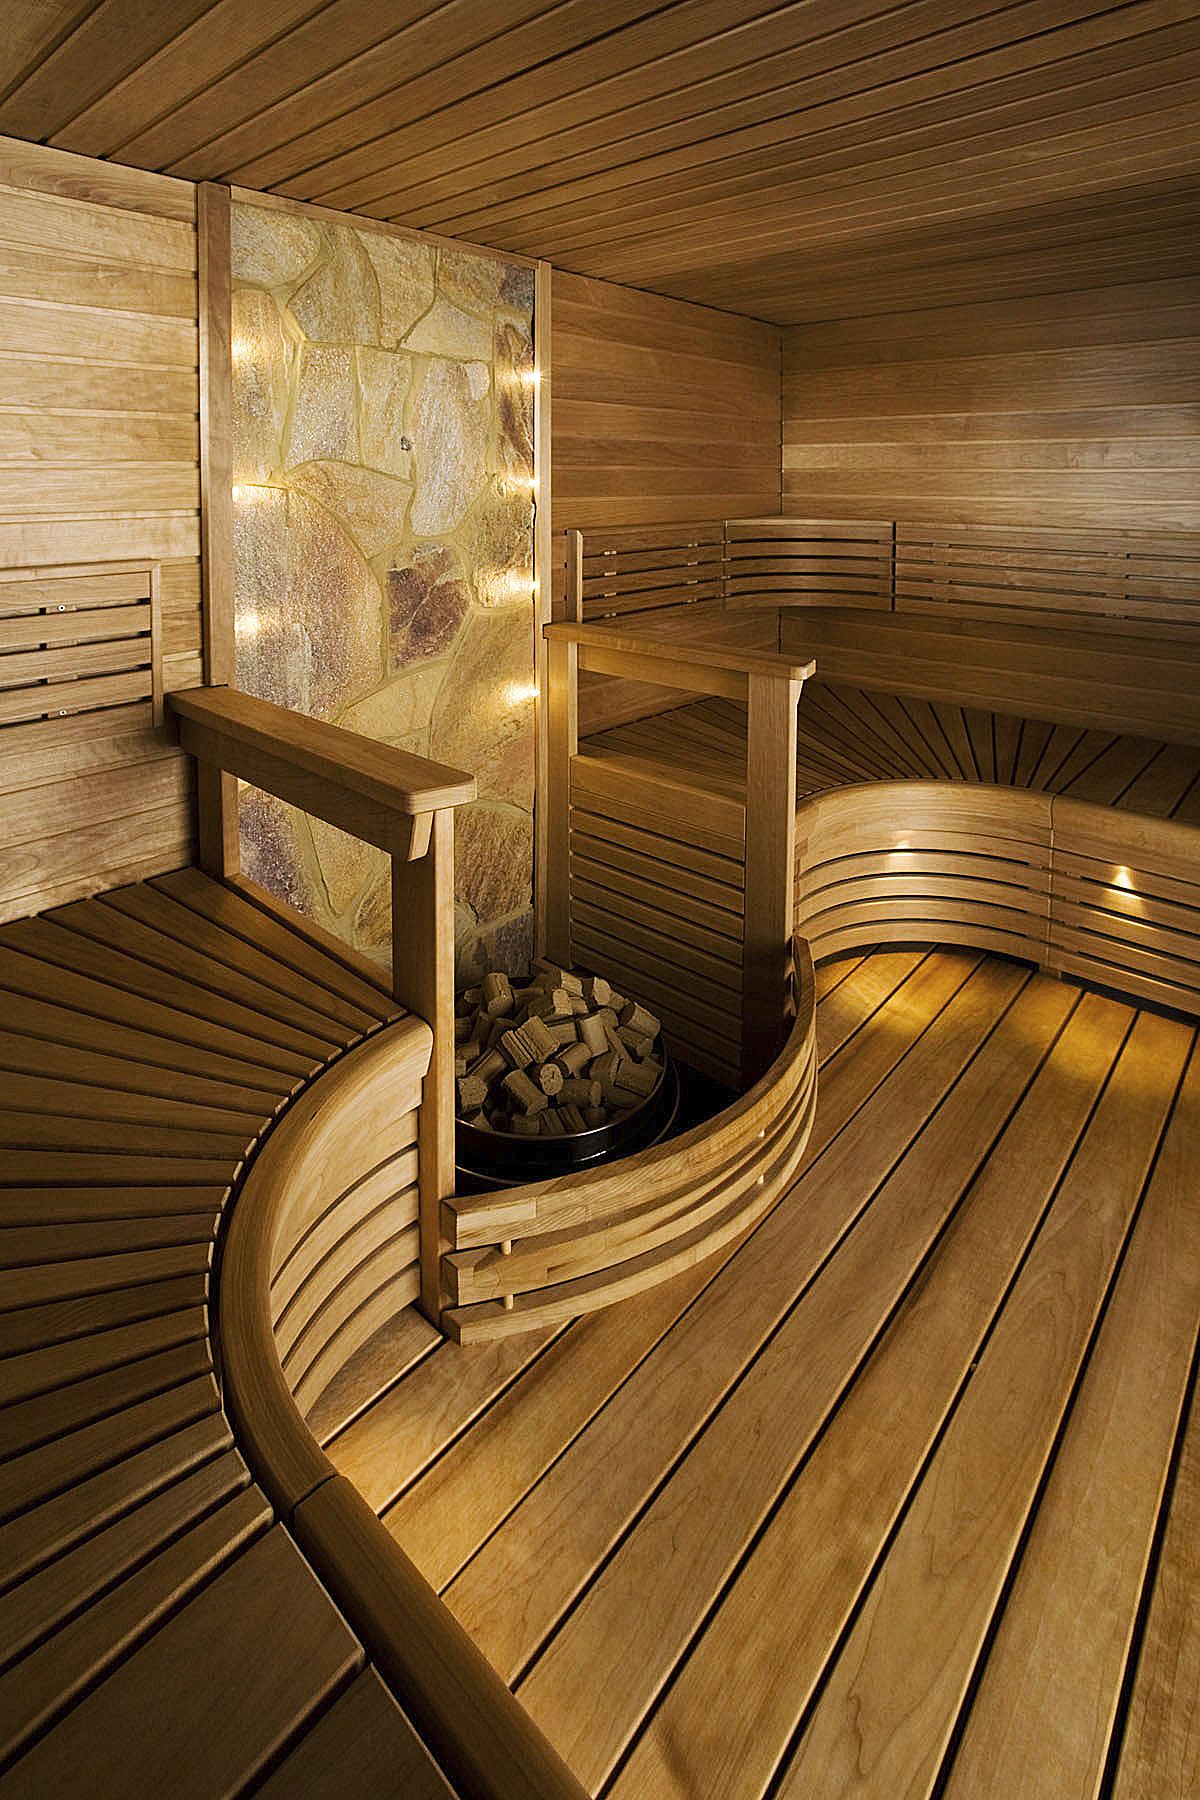 Дизайн бани с комнатой отдыха внутри: фото, тонкости оформления (58 фото)